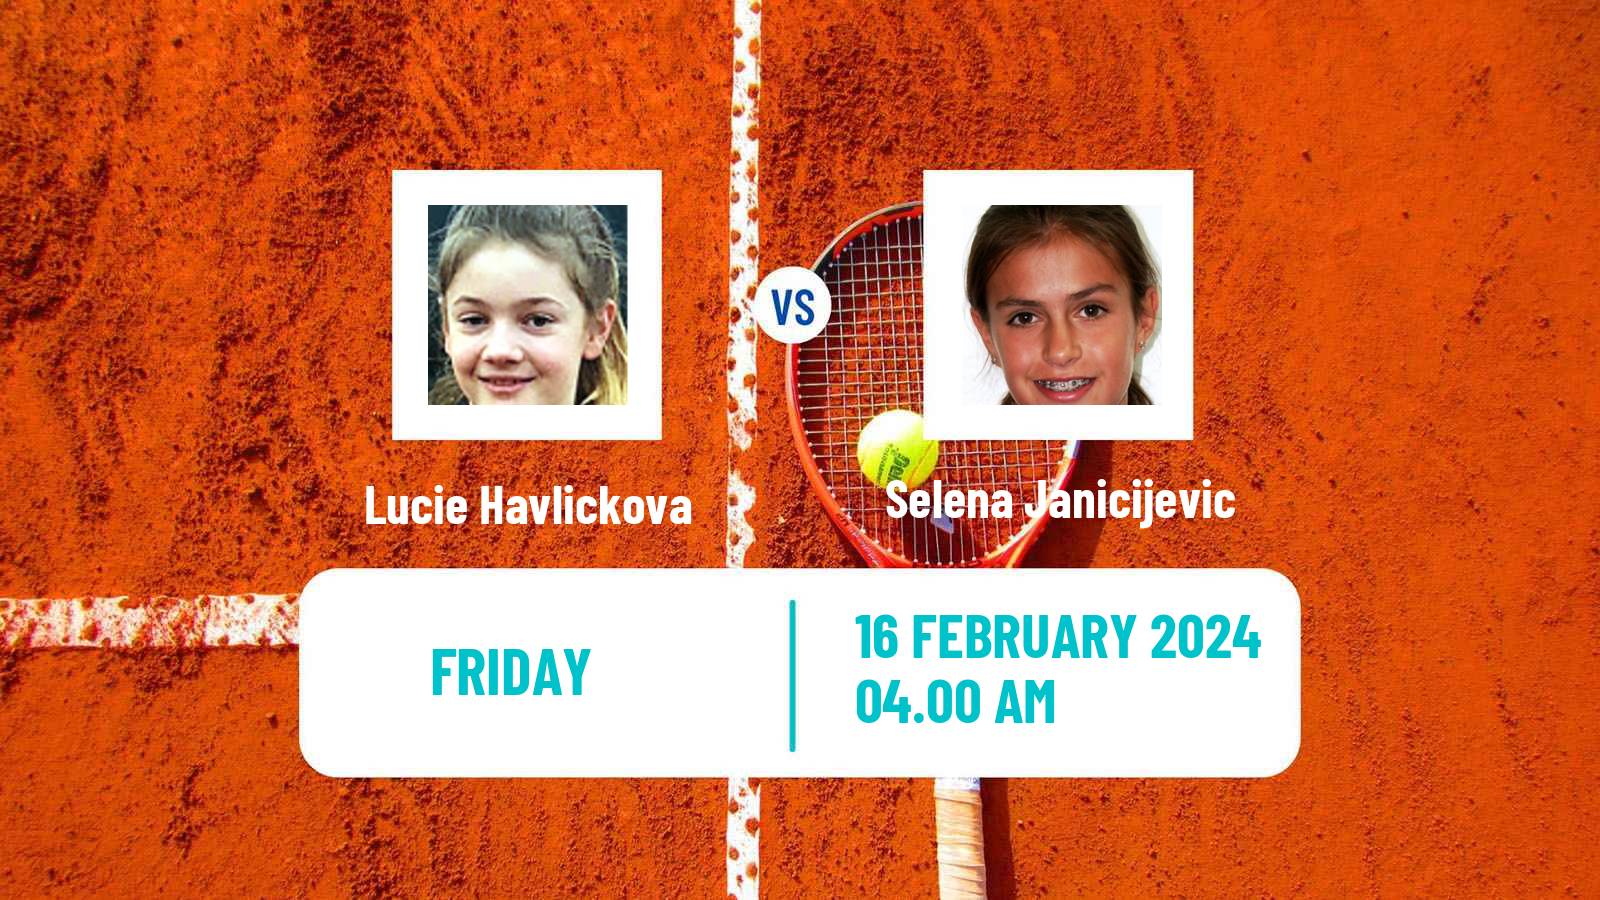 Tennis ITF W35 Antalya 3 Women Lucie Havlickova - Selena Janicijevic